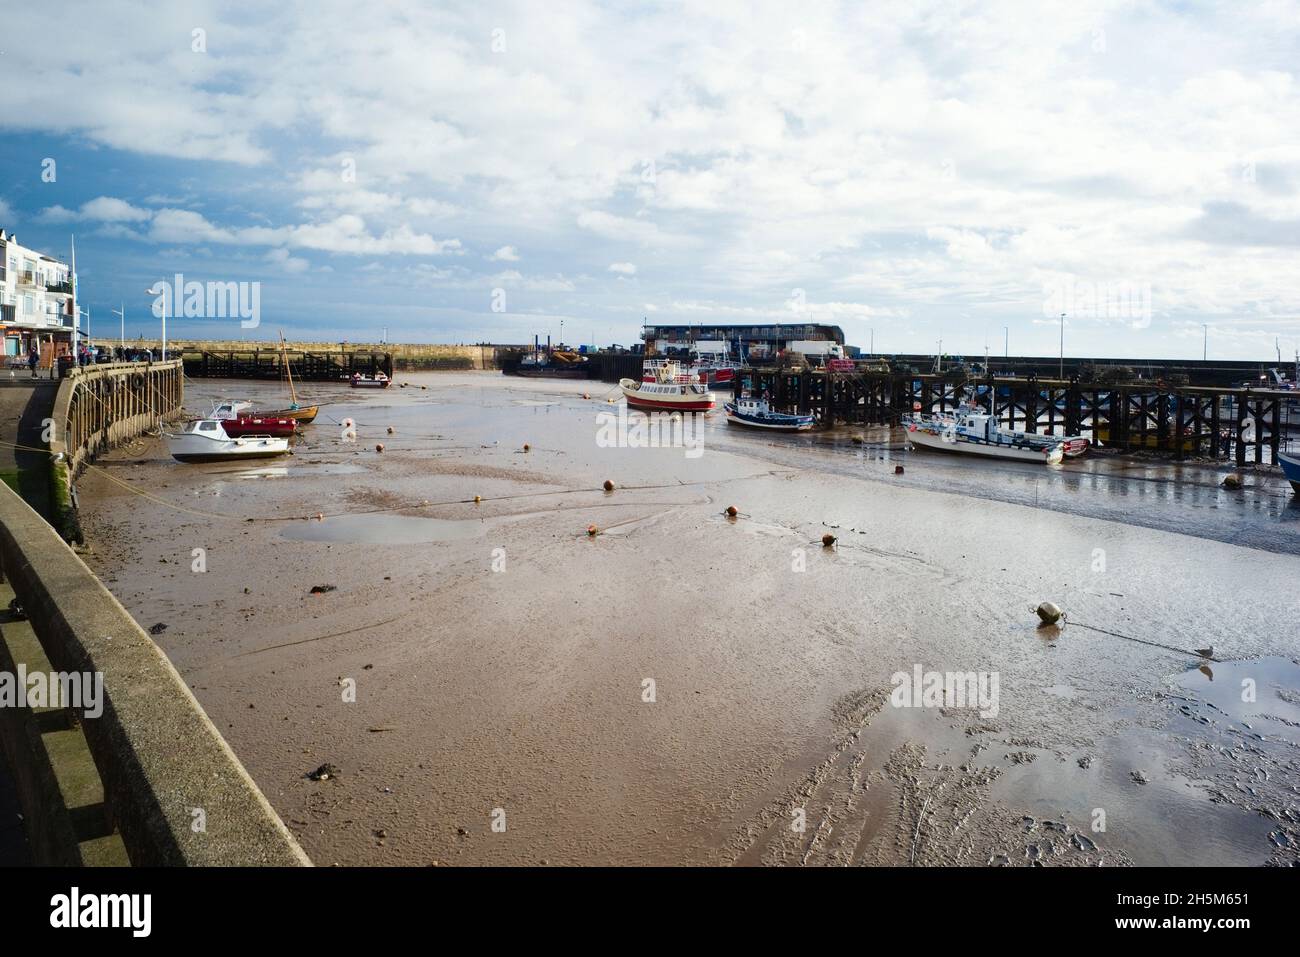 El puerto de Bridlington está en marea baja Foto de stock